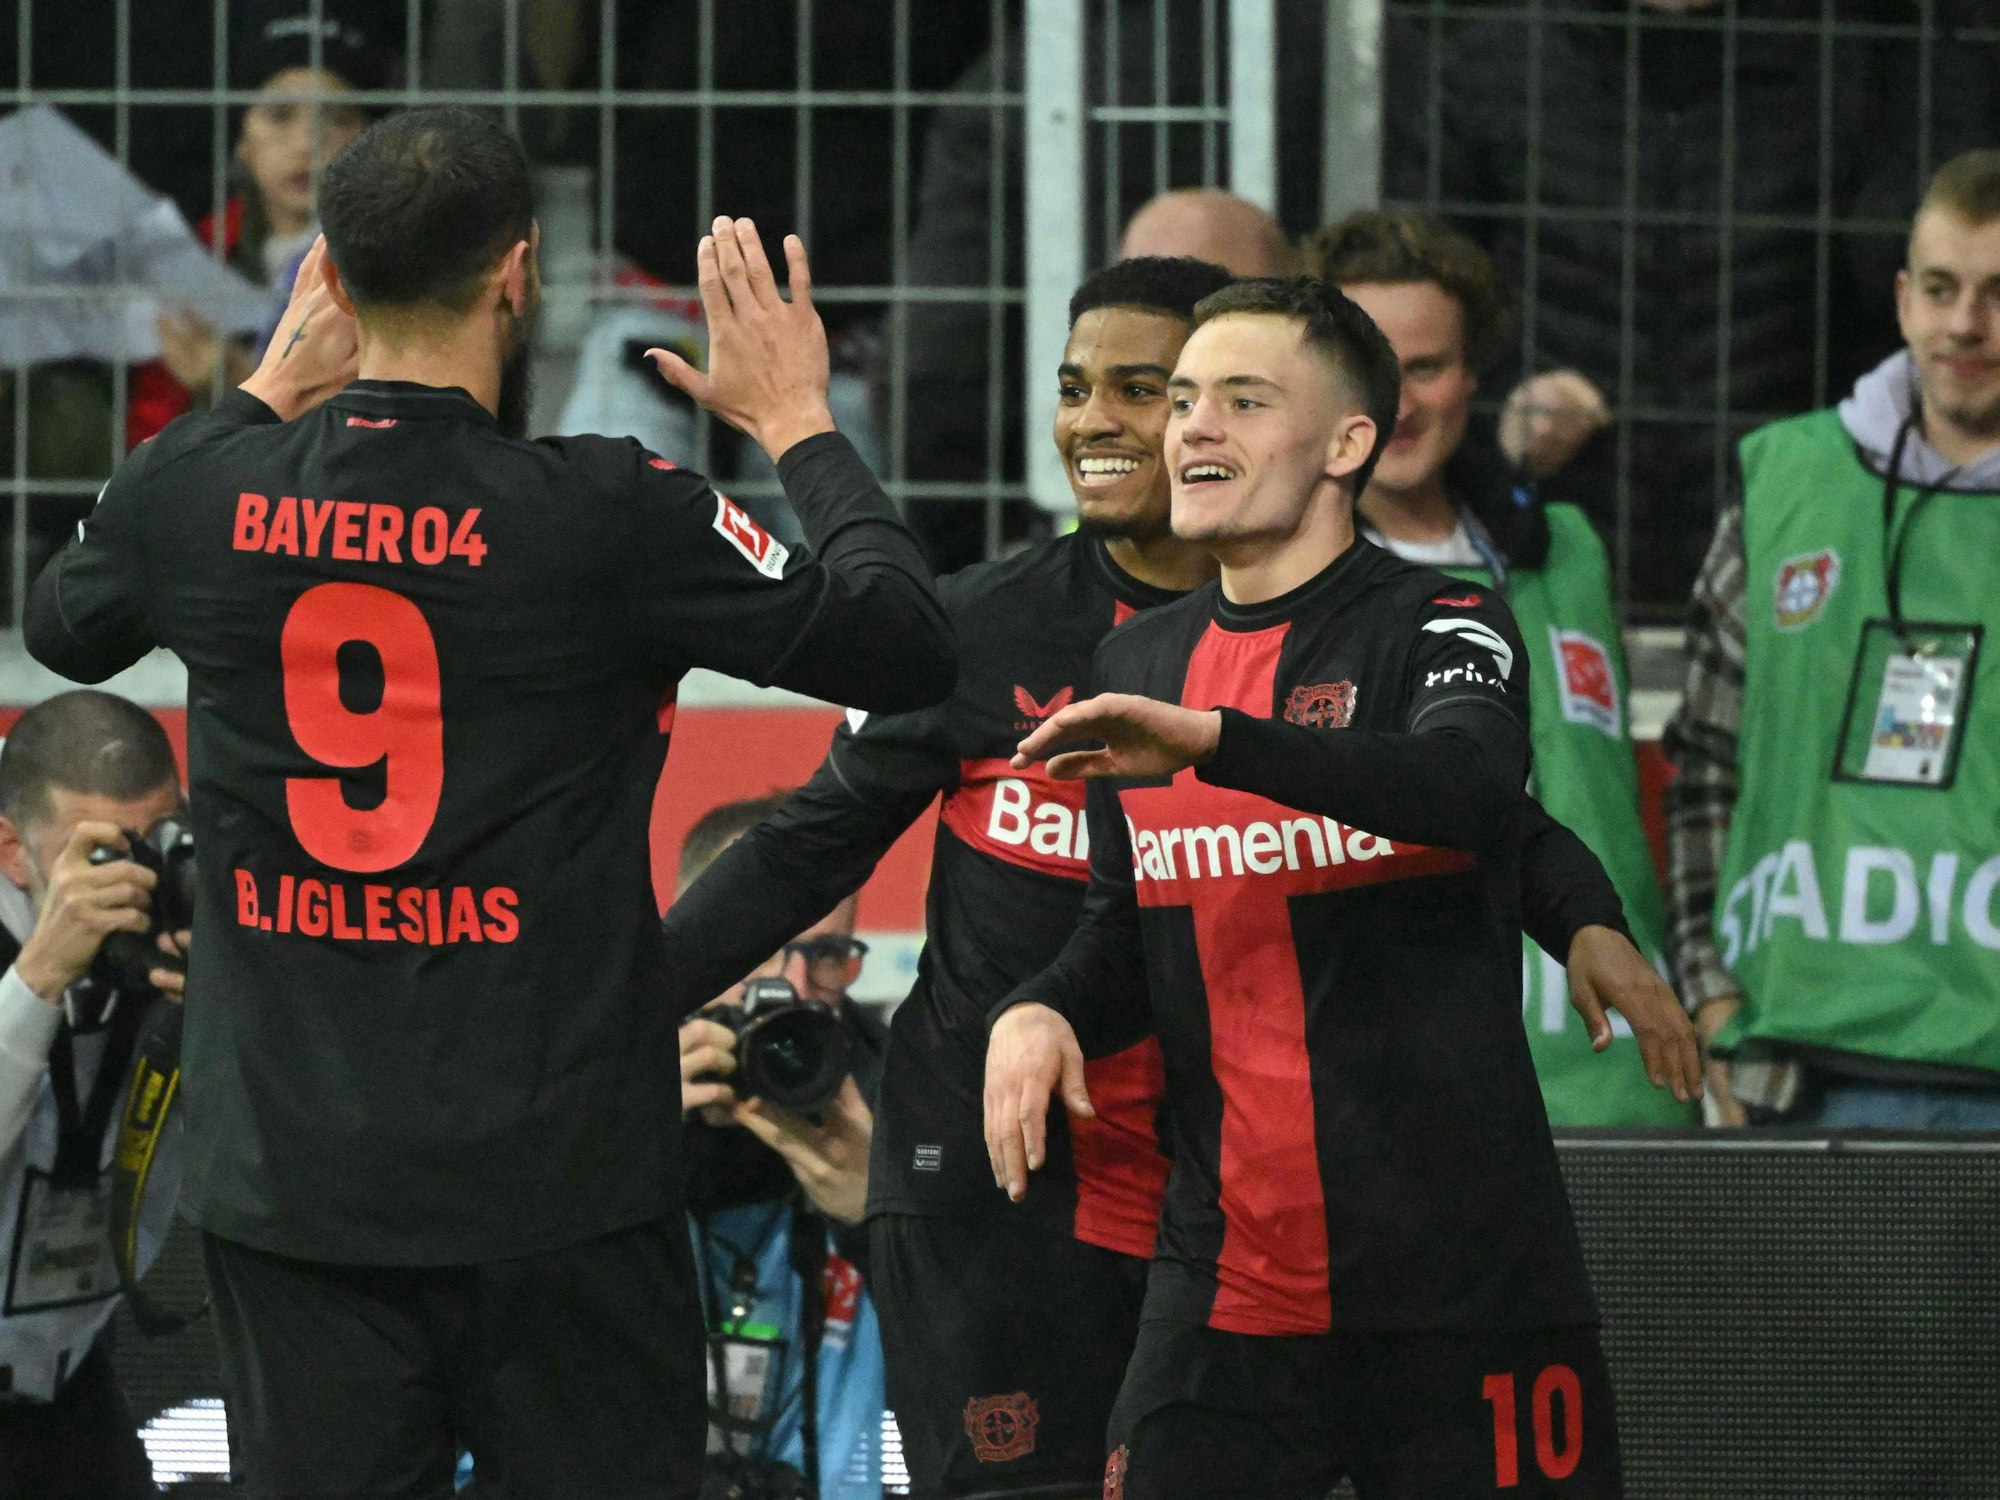 Bayer Leverkusens Spieler jubeln gegen den VfL Wolfsburg.